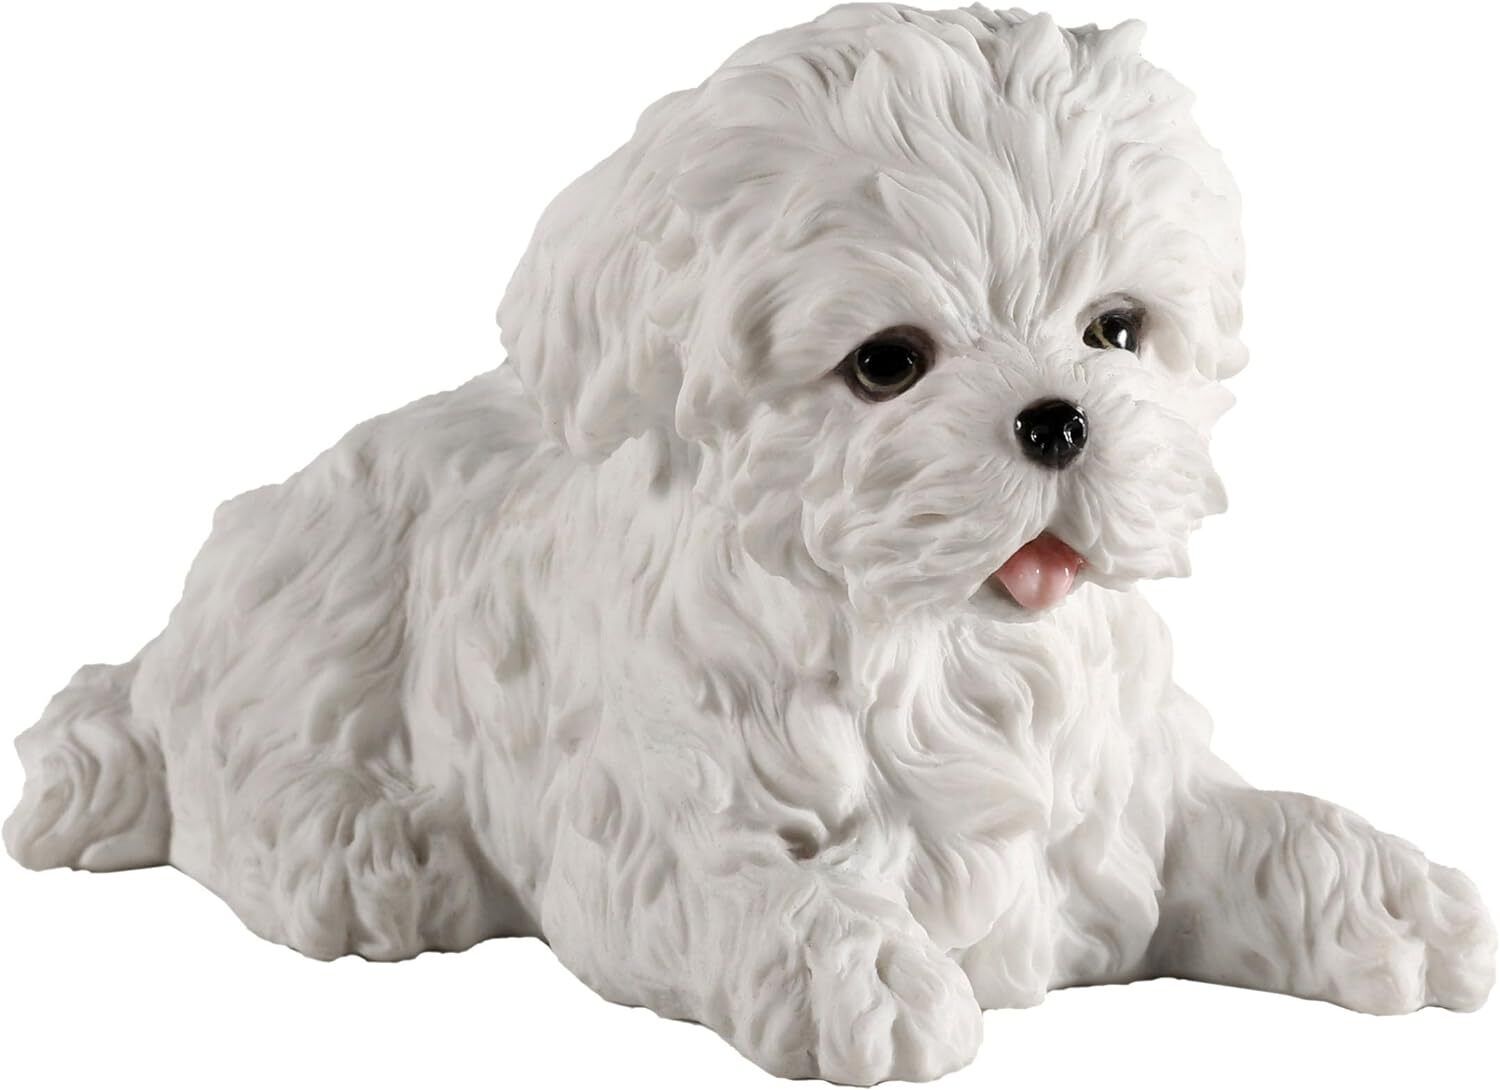 Veronese Design Maltese Terrier Puppy Dog Animal Figurine, White